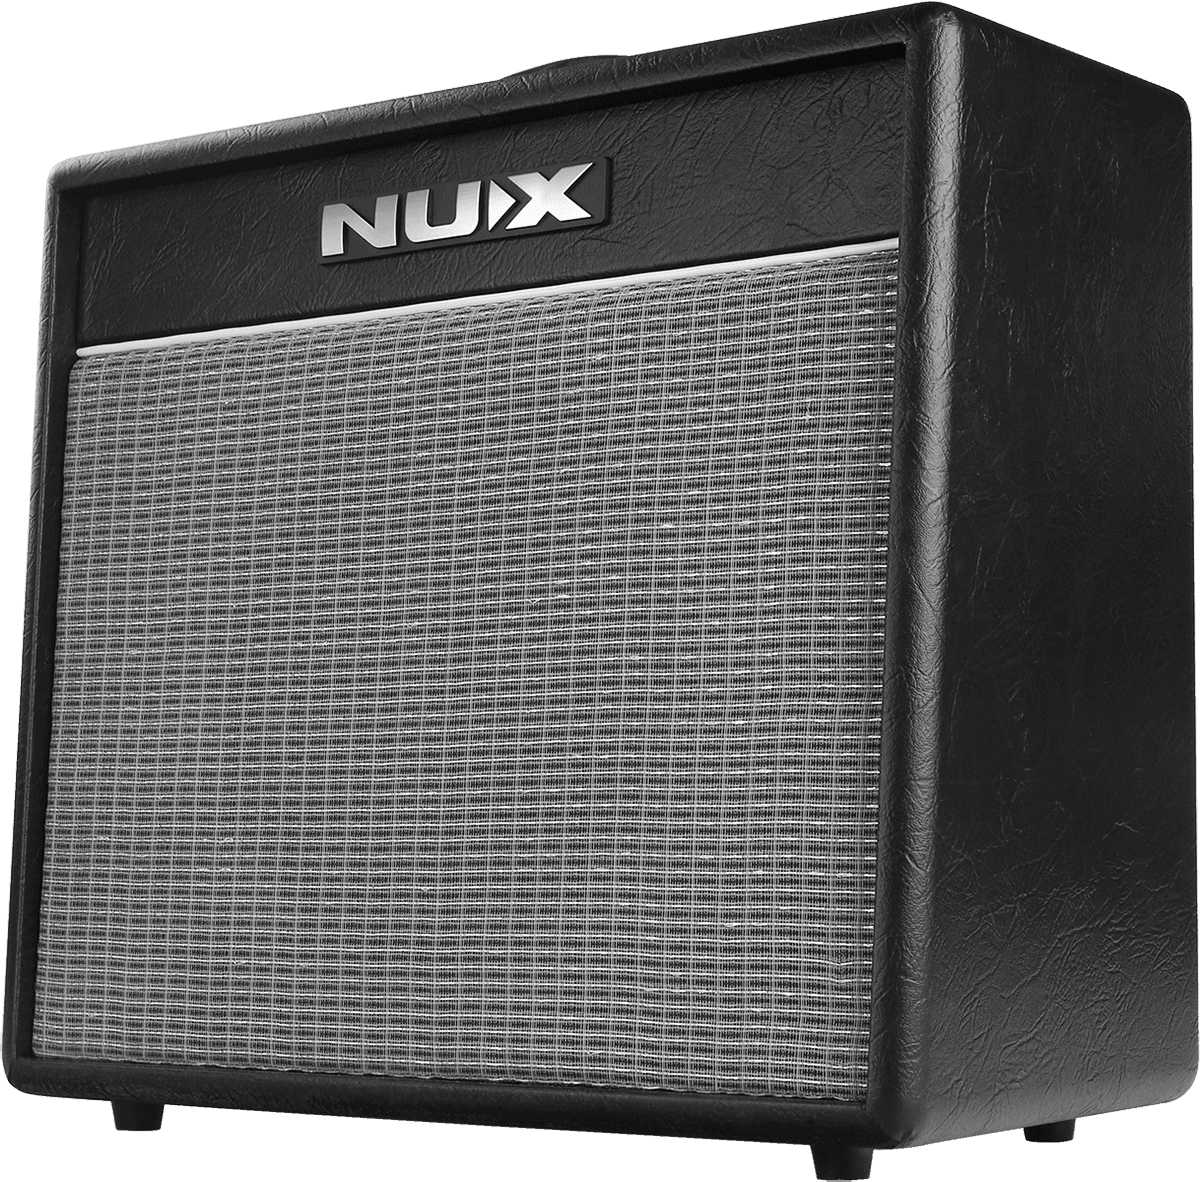 Nux Mighty 40 Bt 40w 1x10 - Combo amplificador para guitarra eléctrica - Variation 4